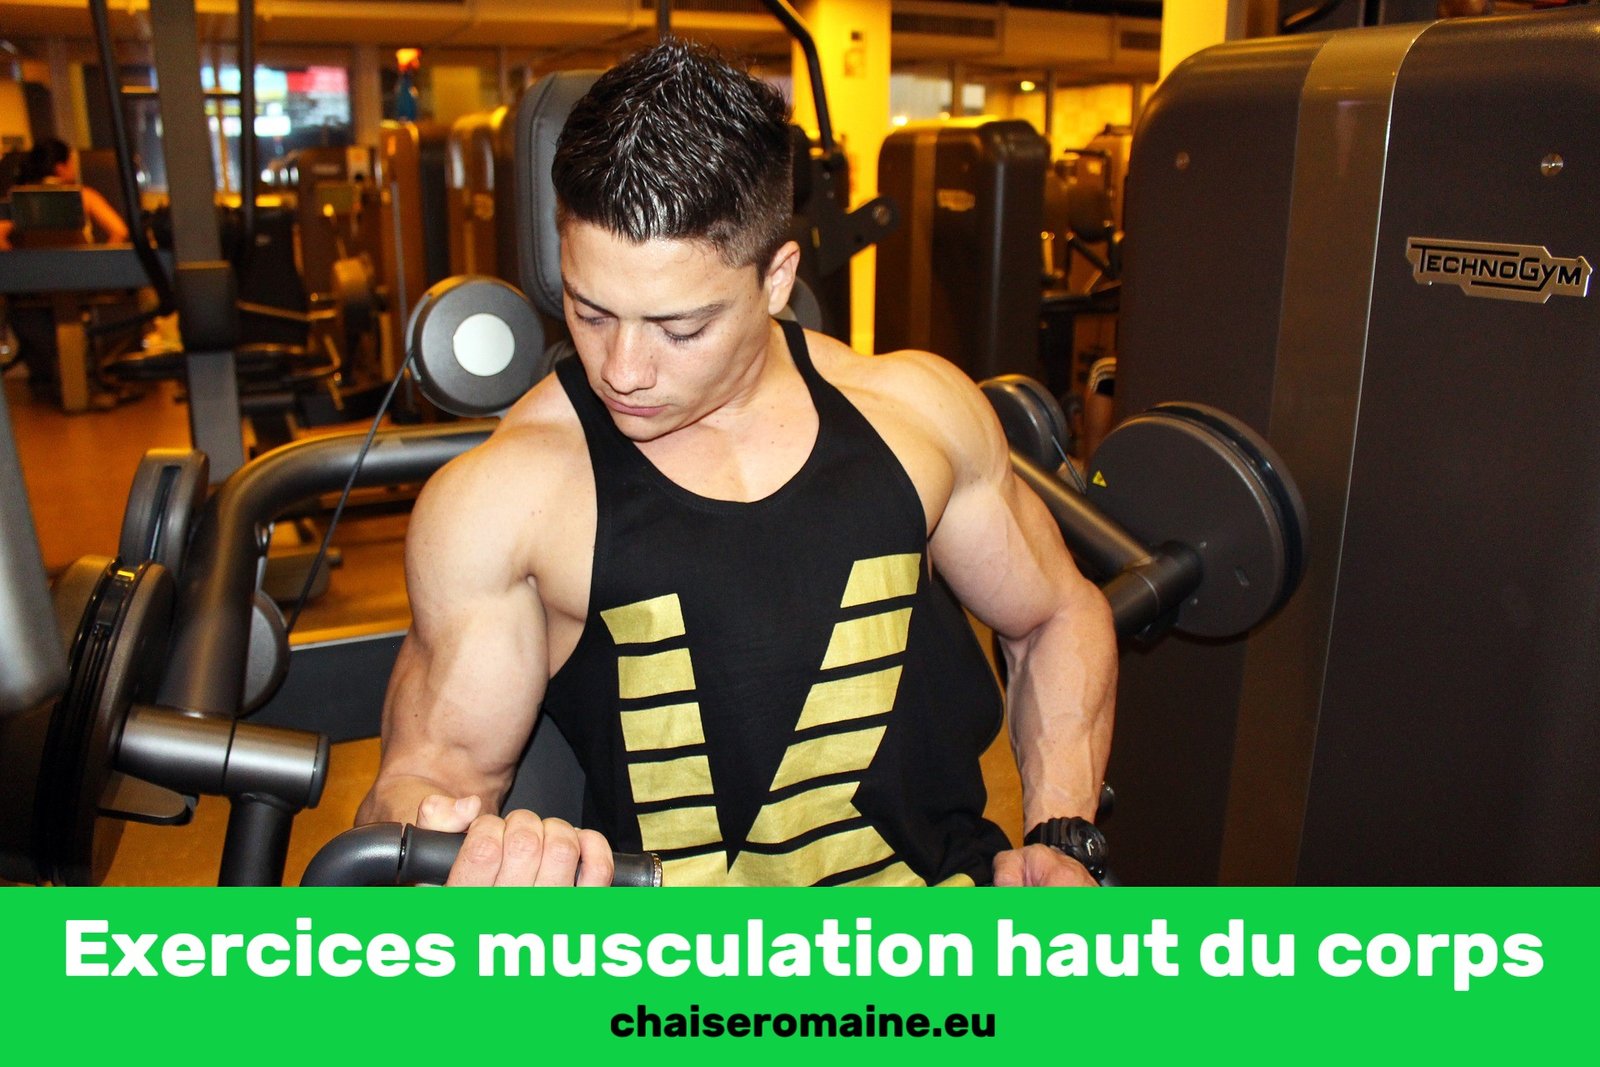 Exercice musculation haut du corps : Les 2 indispensables